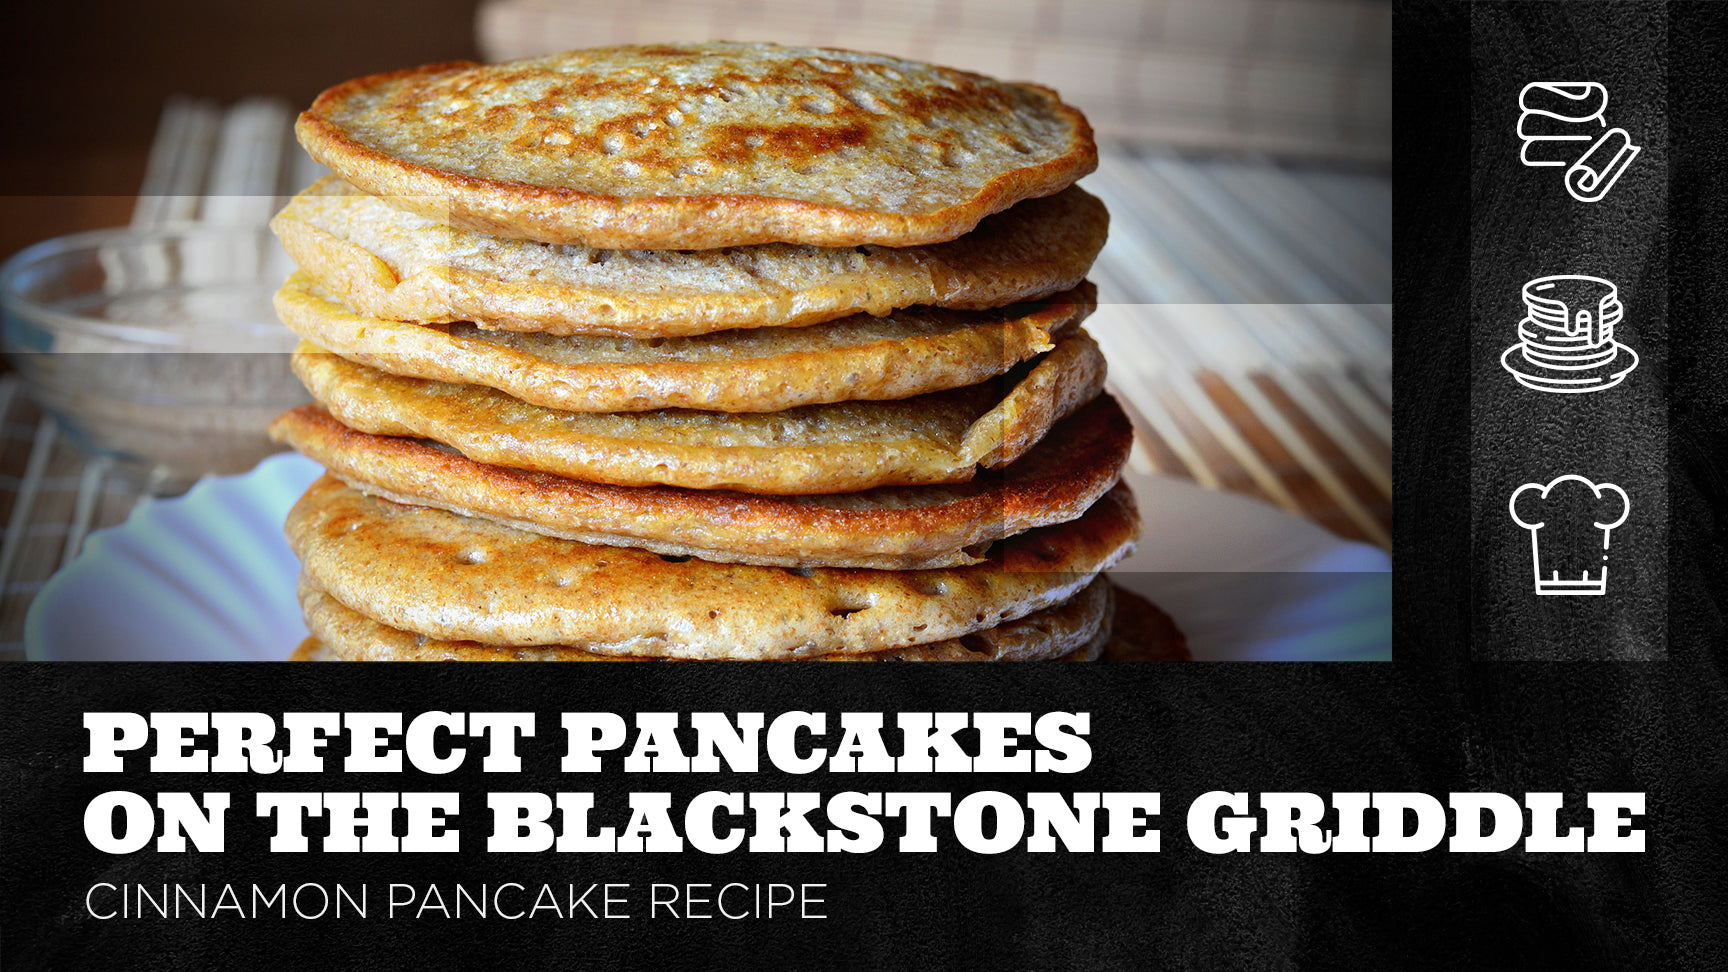 Pancakes / Blackstone Griddle Cooking 